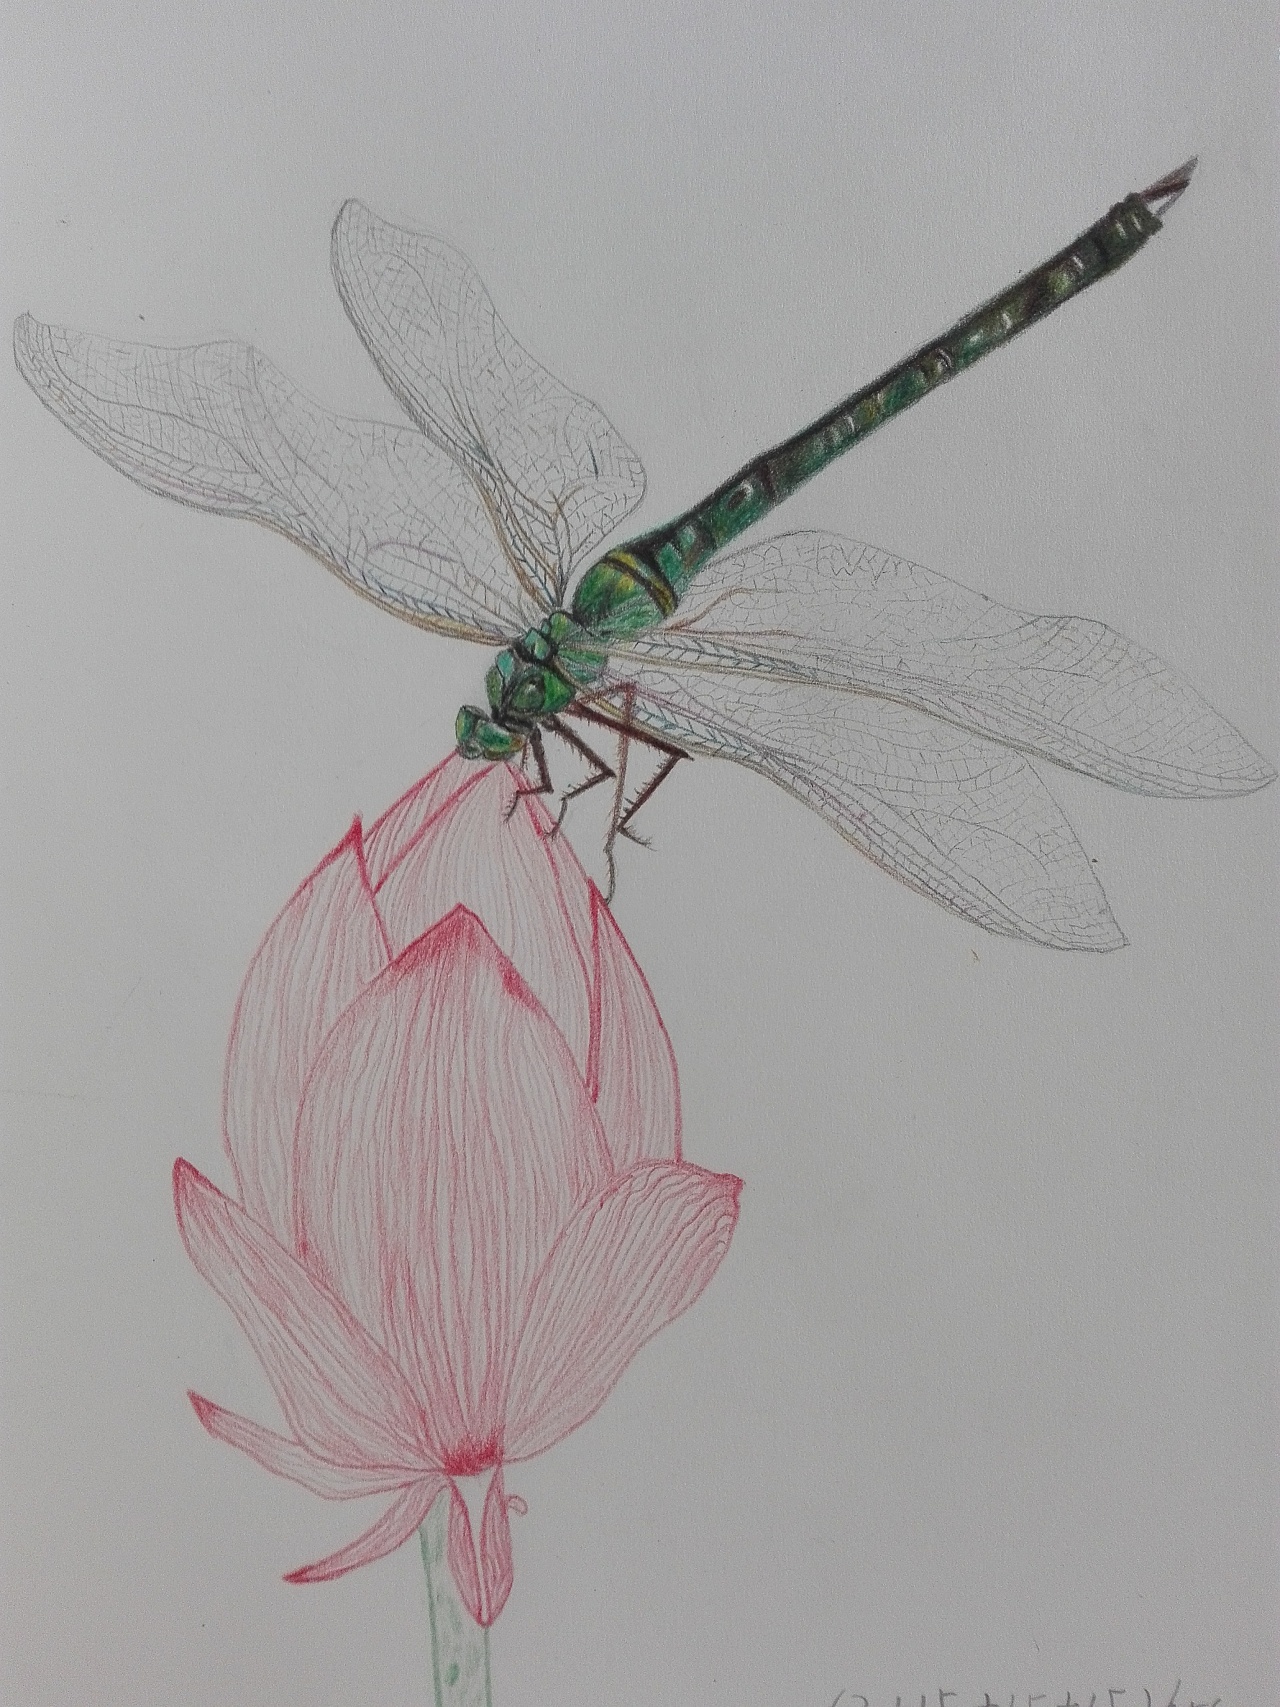 蜻蜓的画法彩铅图片